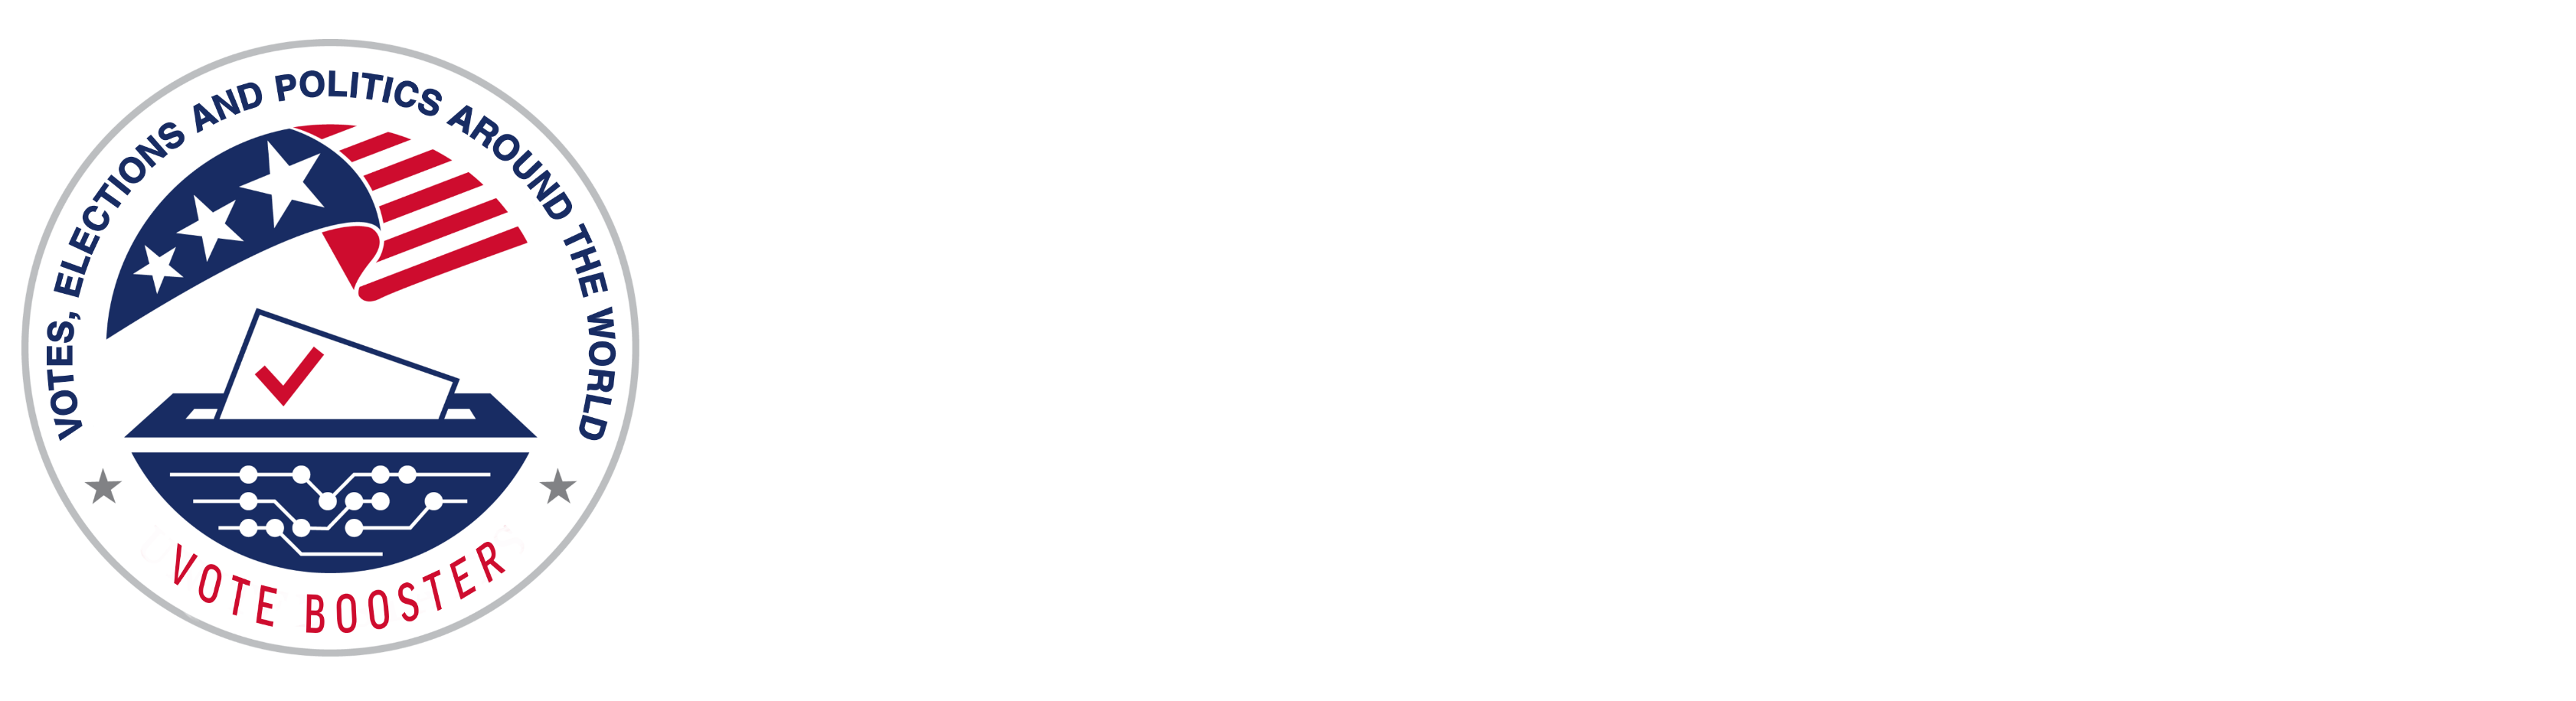 Vote Booster